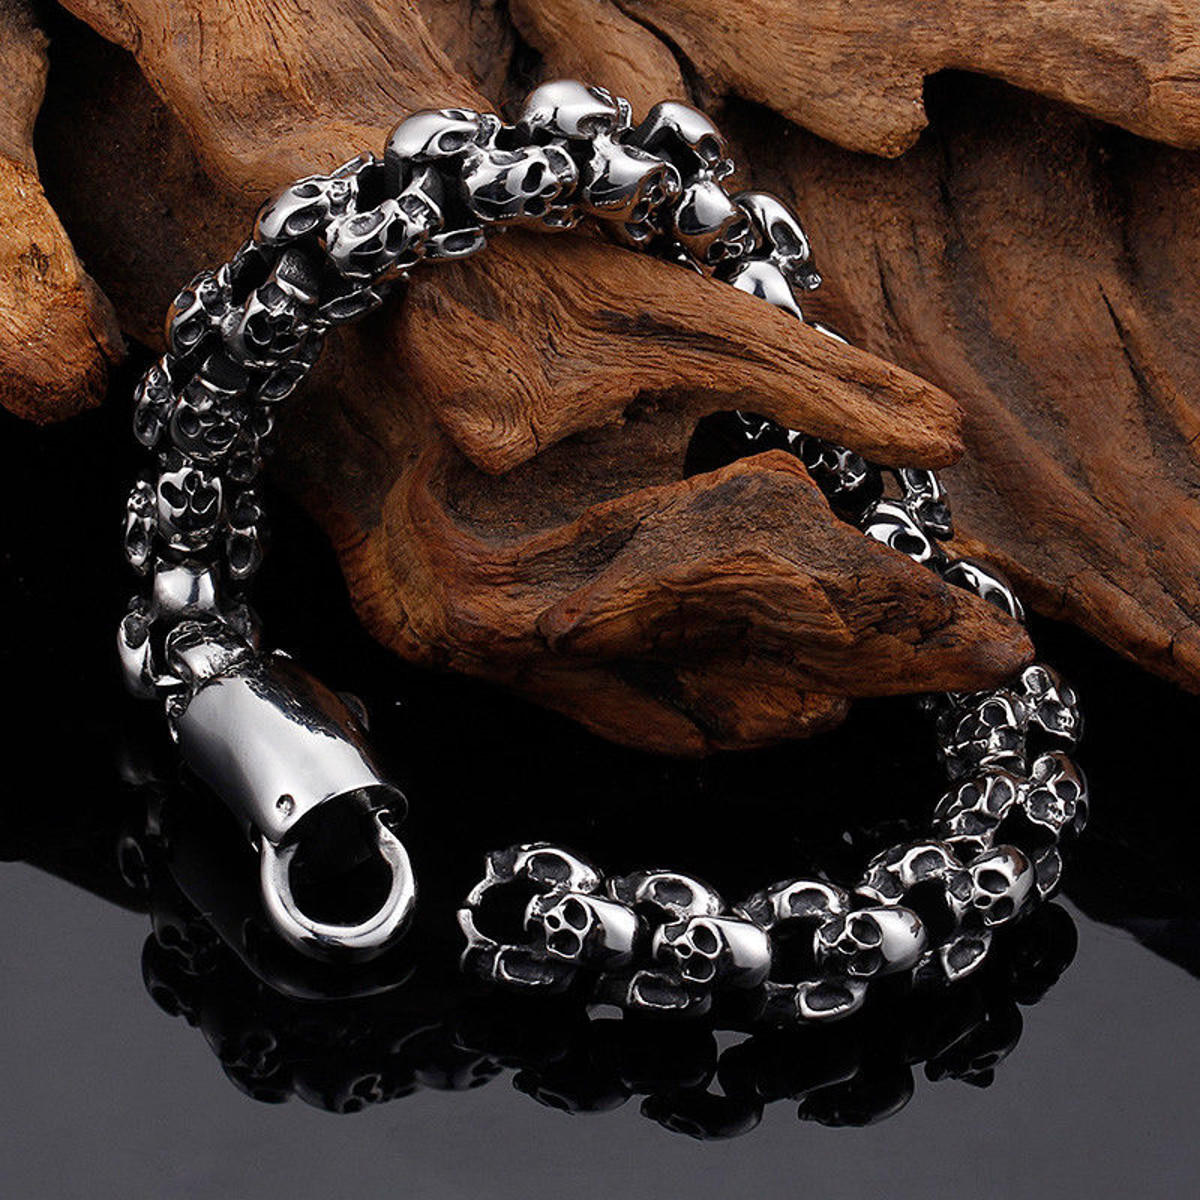 casting stainless steel skeleton skull chain bracelet men at Banggood